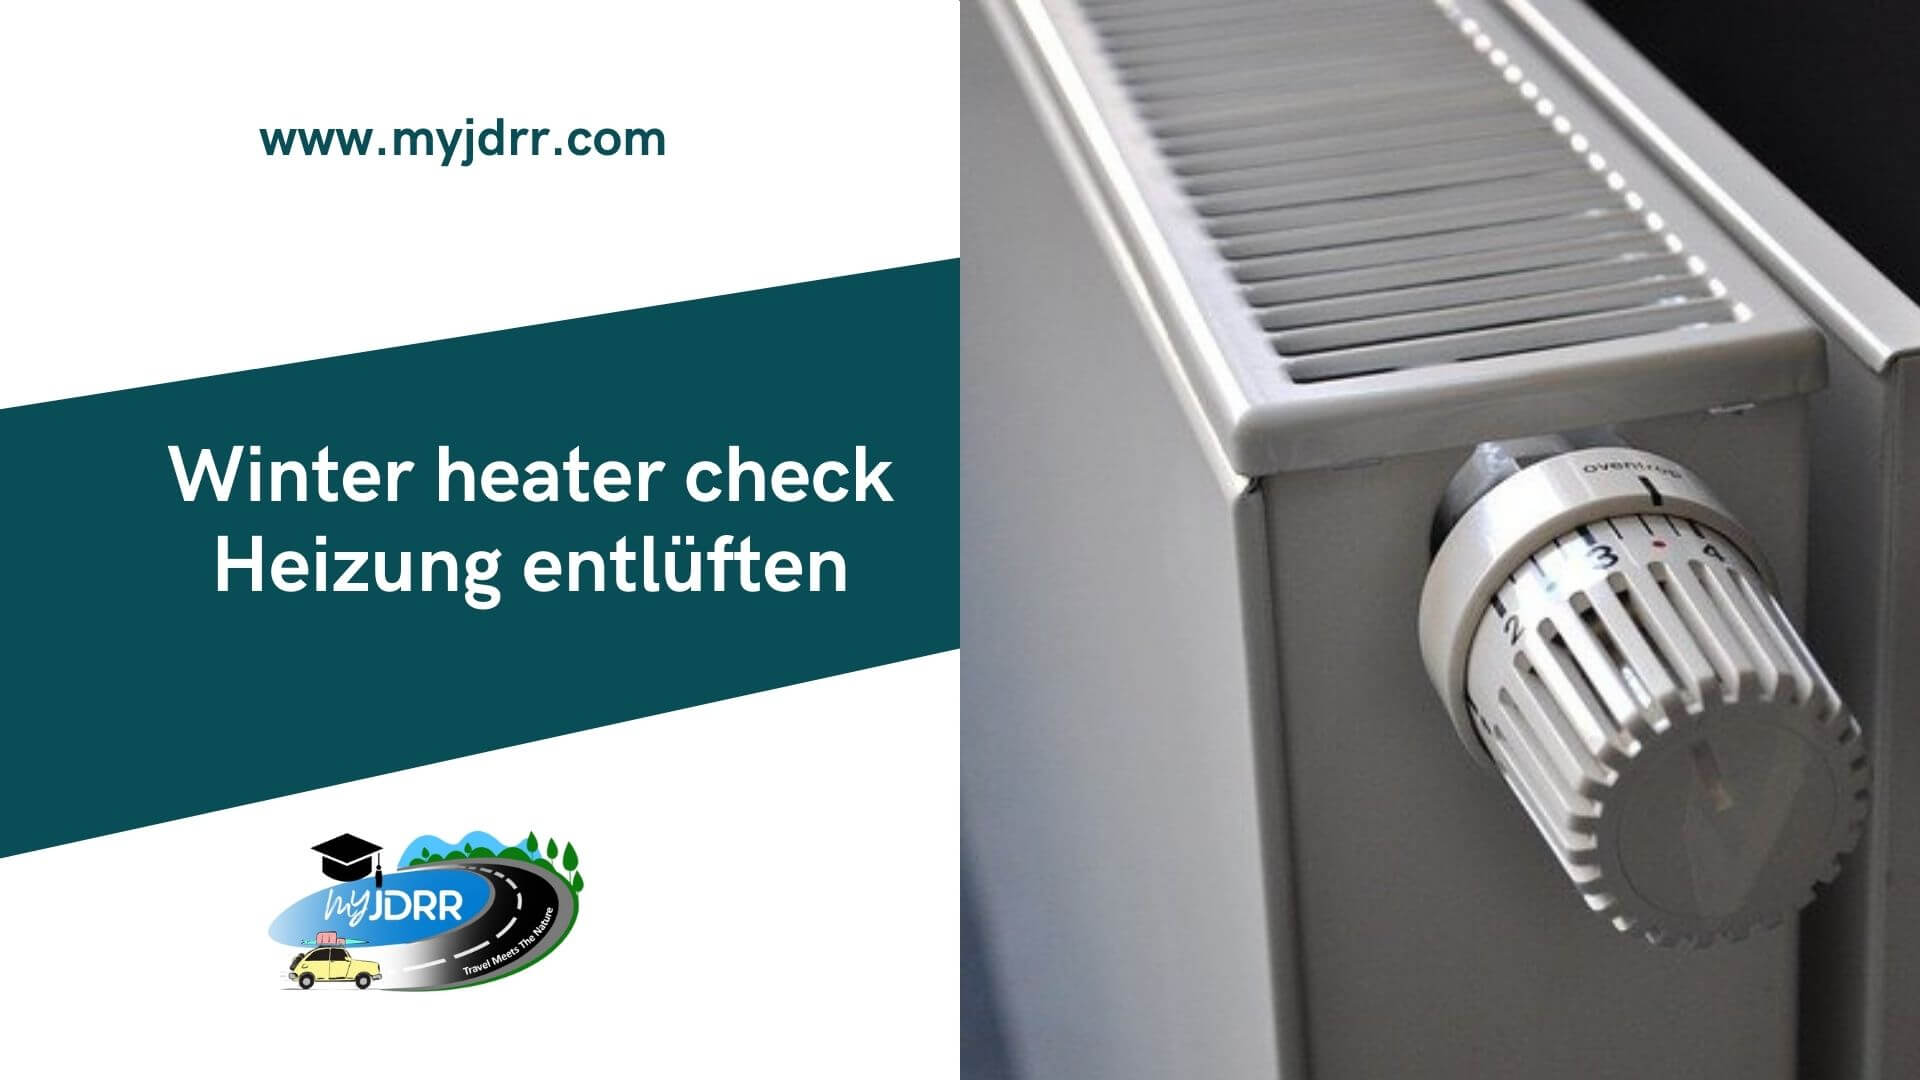 Heizung entlueften - Winter heater vent check